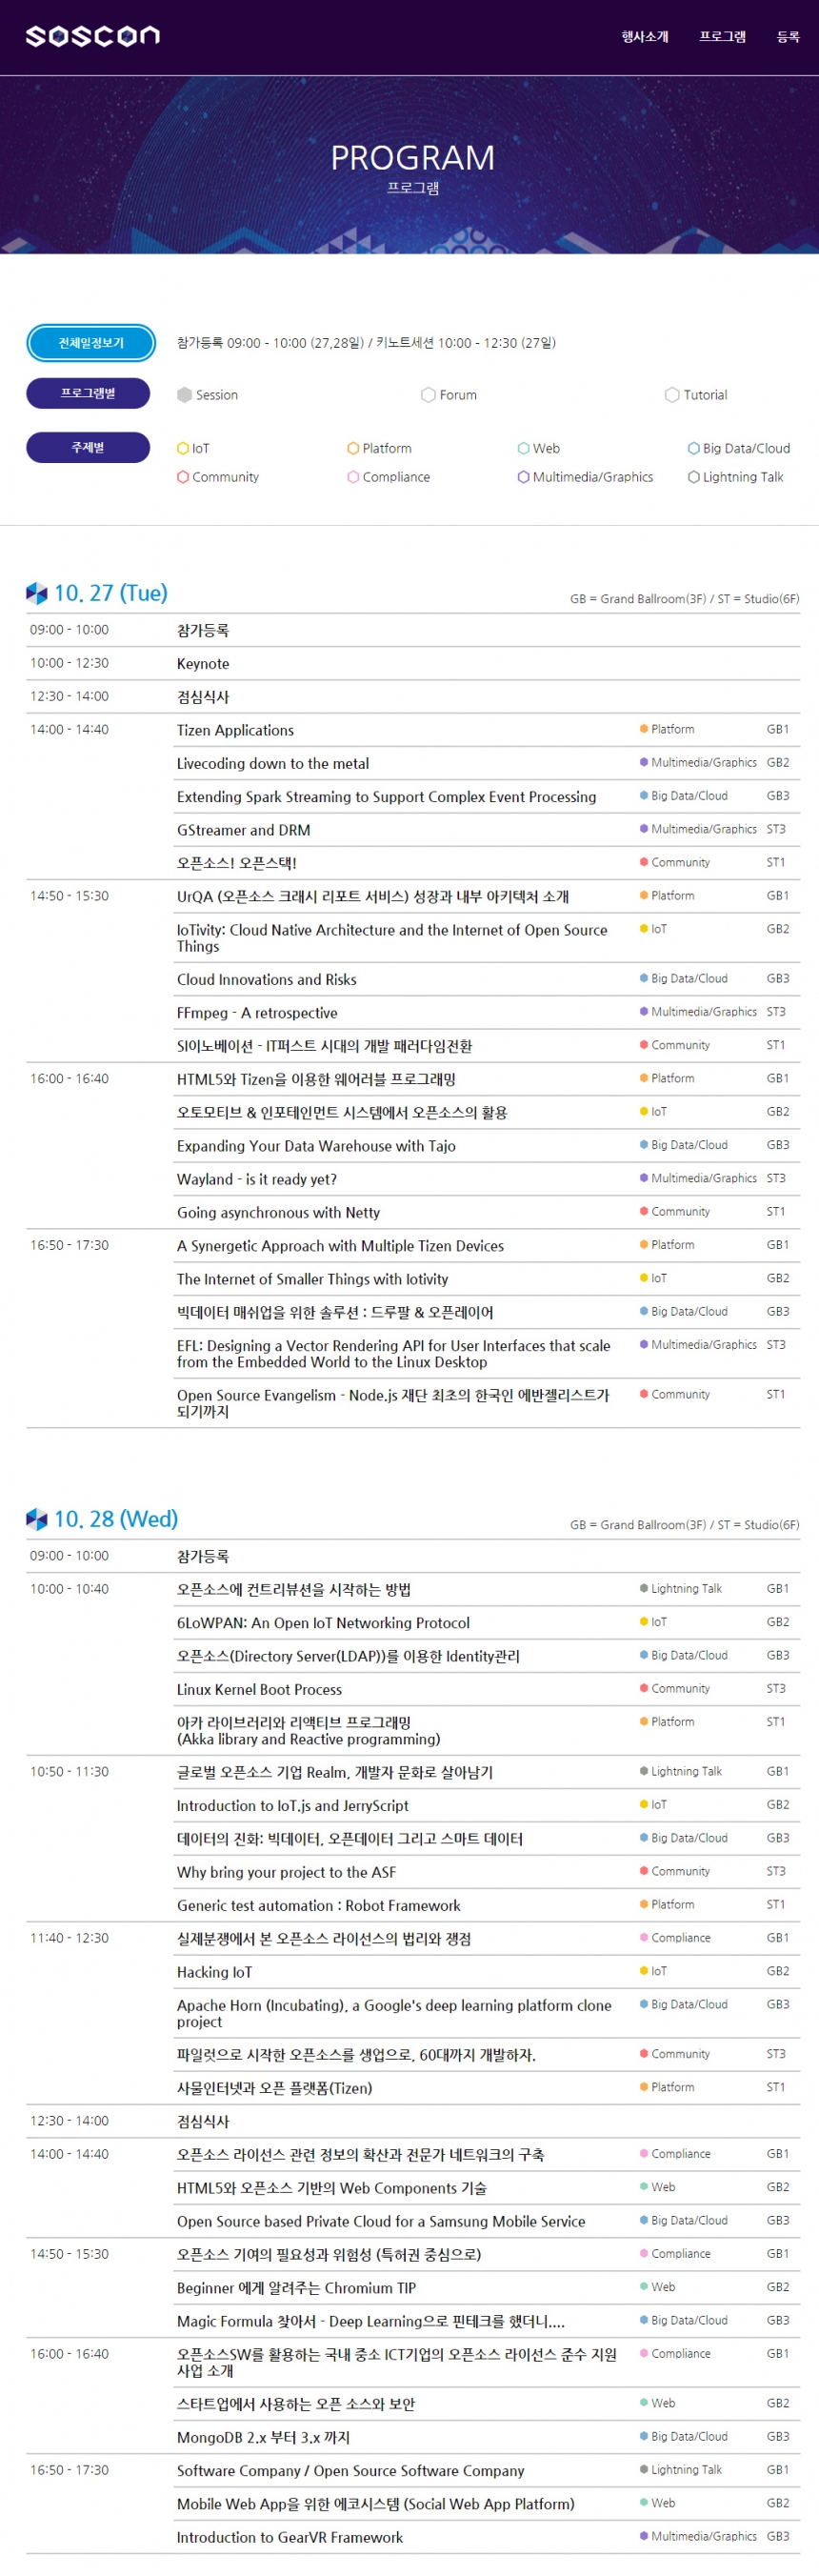 삼성전자, ‘삼성오픈소스컨퍼런스 2015’ 개최